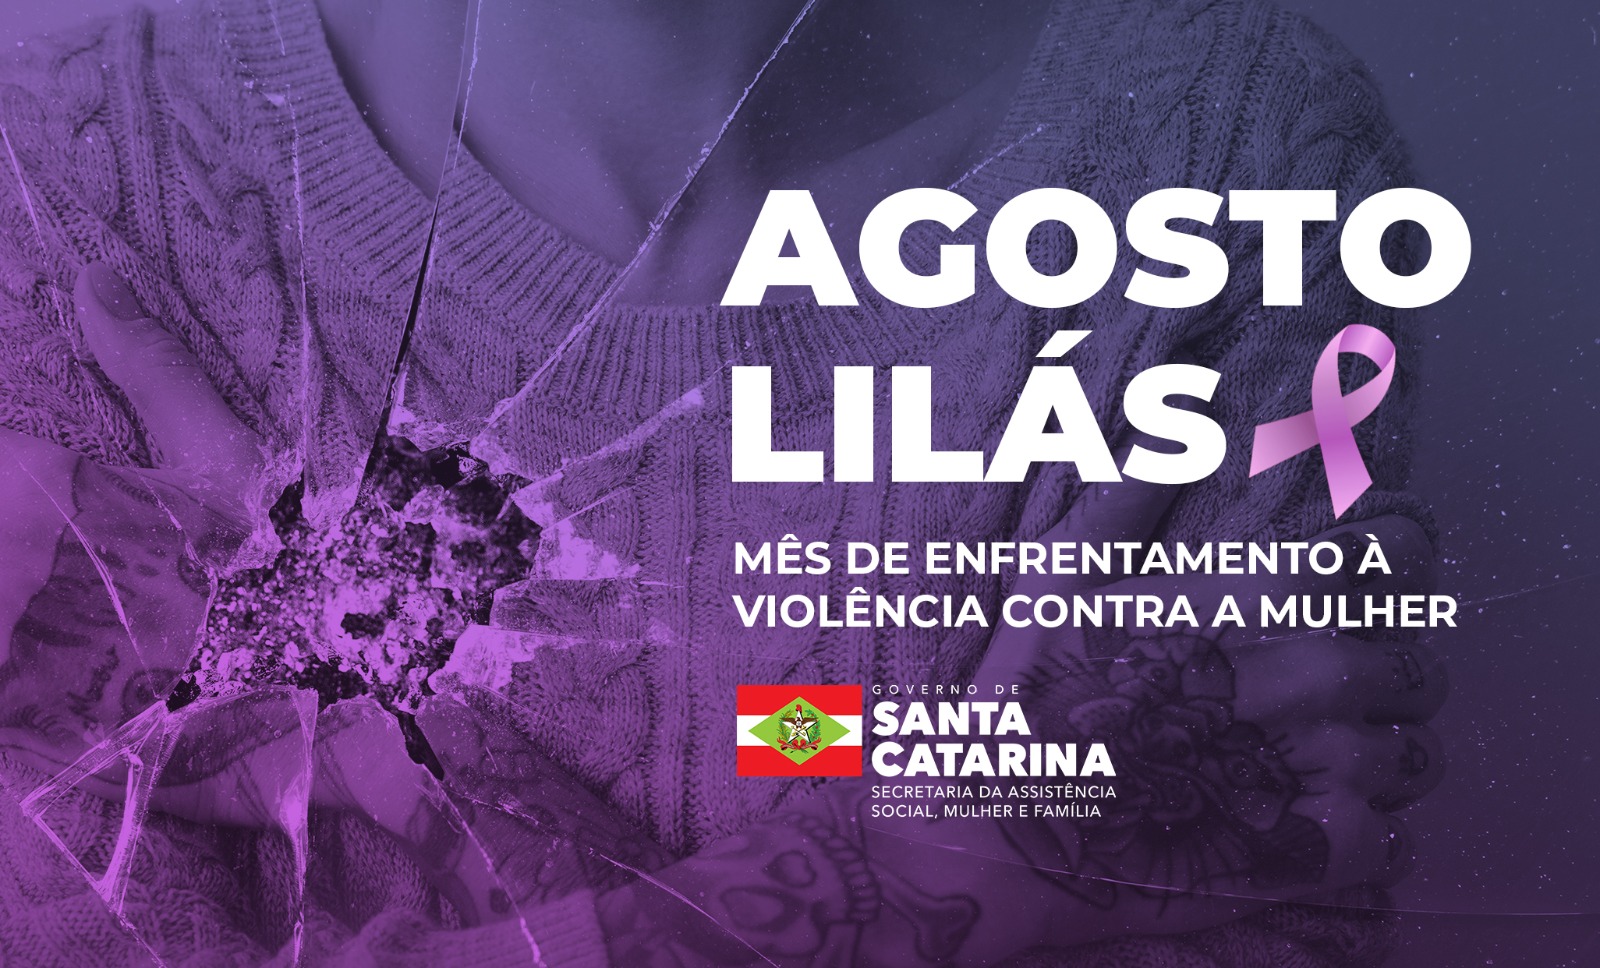 Agosto Lilás - Mês de enfrentamento da violência contra a mulher